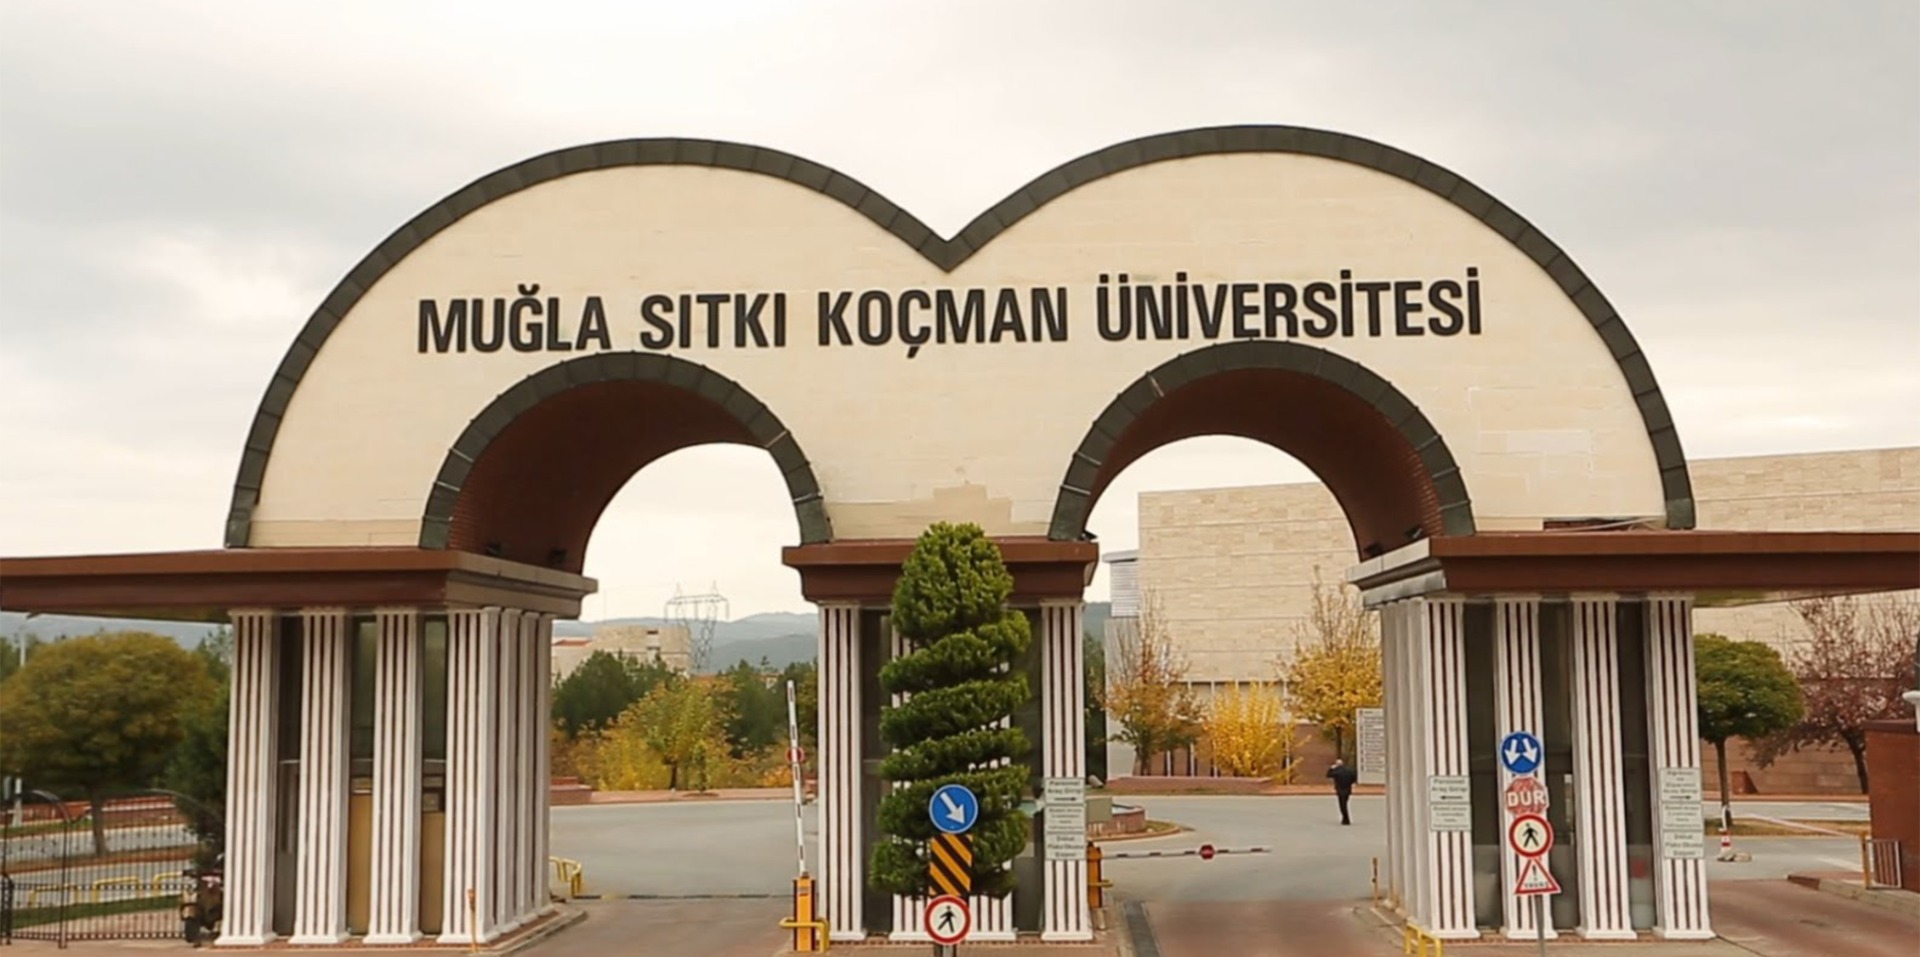 Muğla Sıtkı Koçman Üniversitesi 9 Öğretim ve Araştırma Görevlisi alıyor